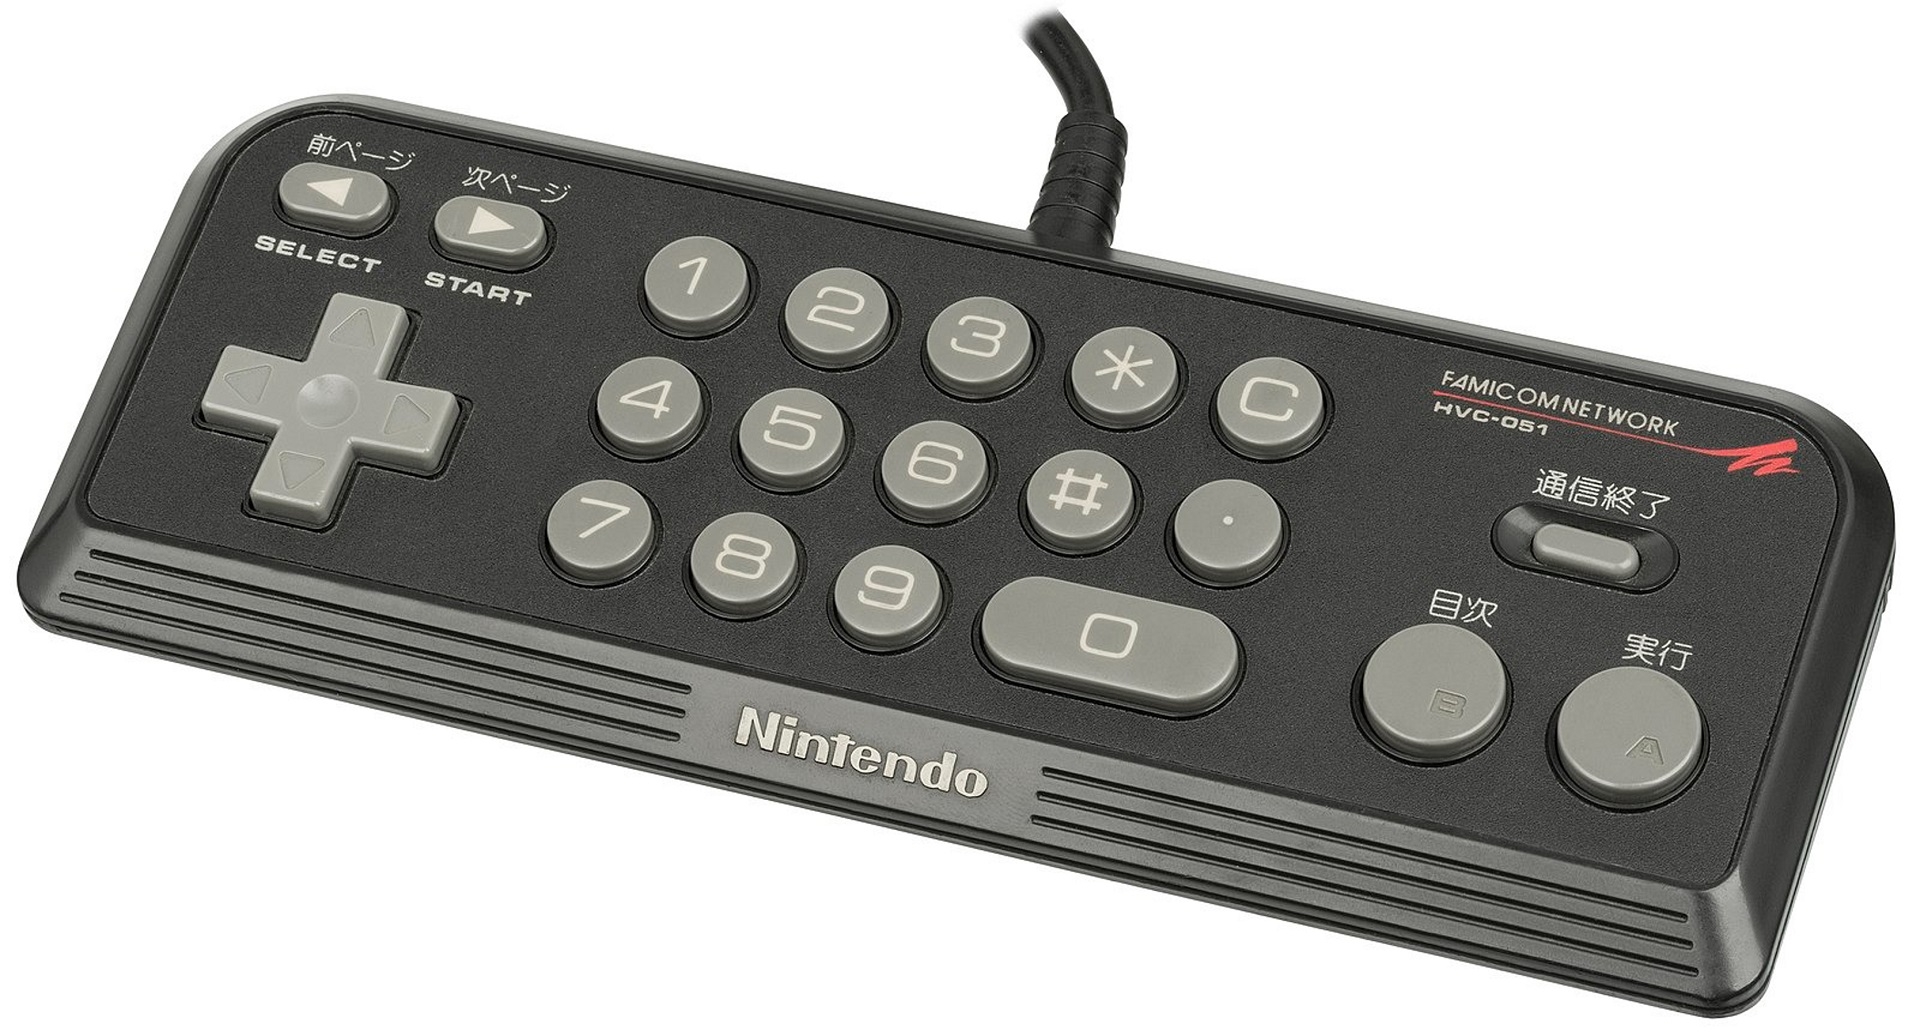 Famicom Modem 的控制器